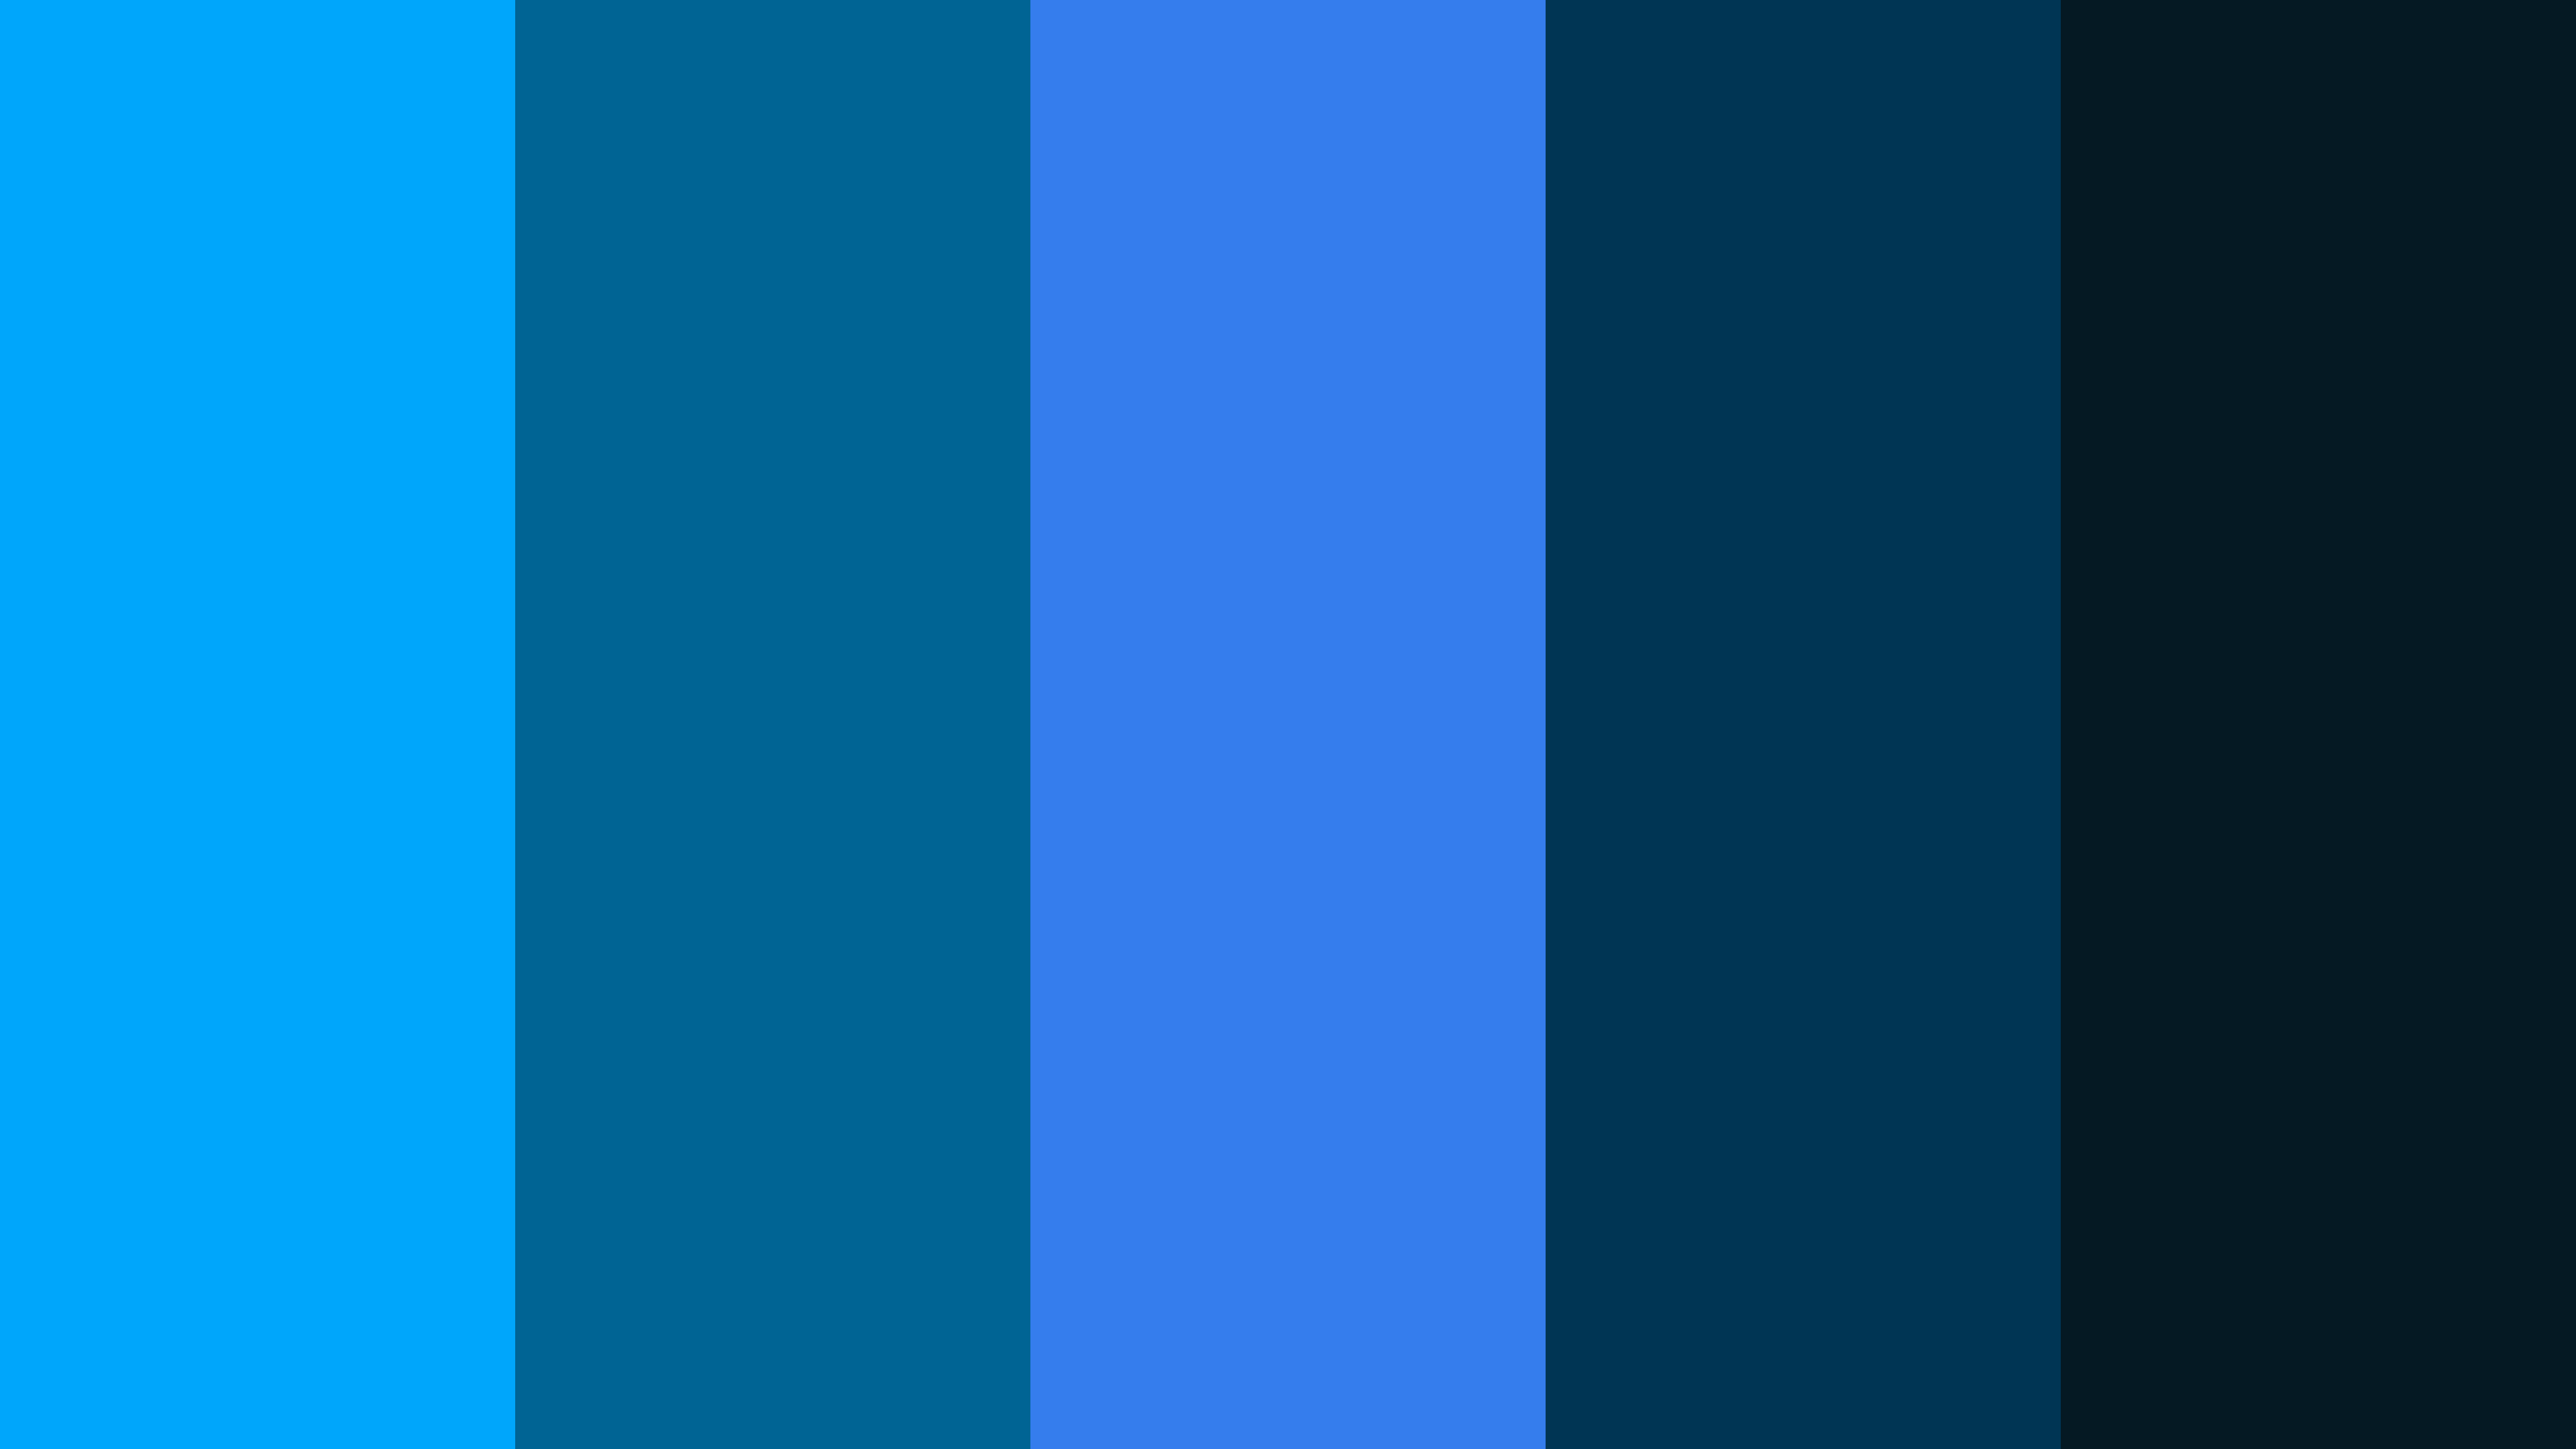 Prussian Blue #233C78 RGB(35, 60, 120)